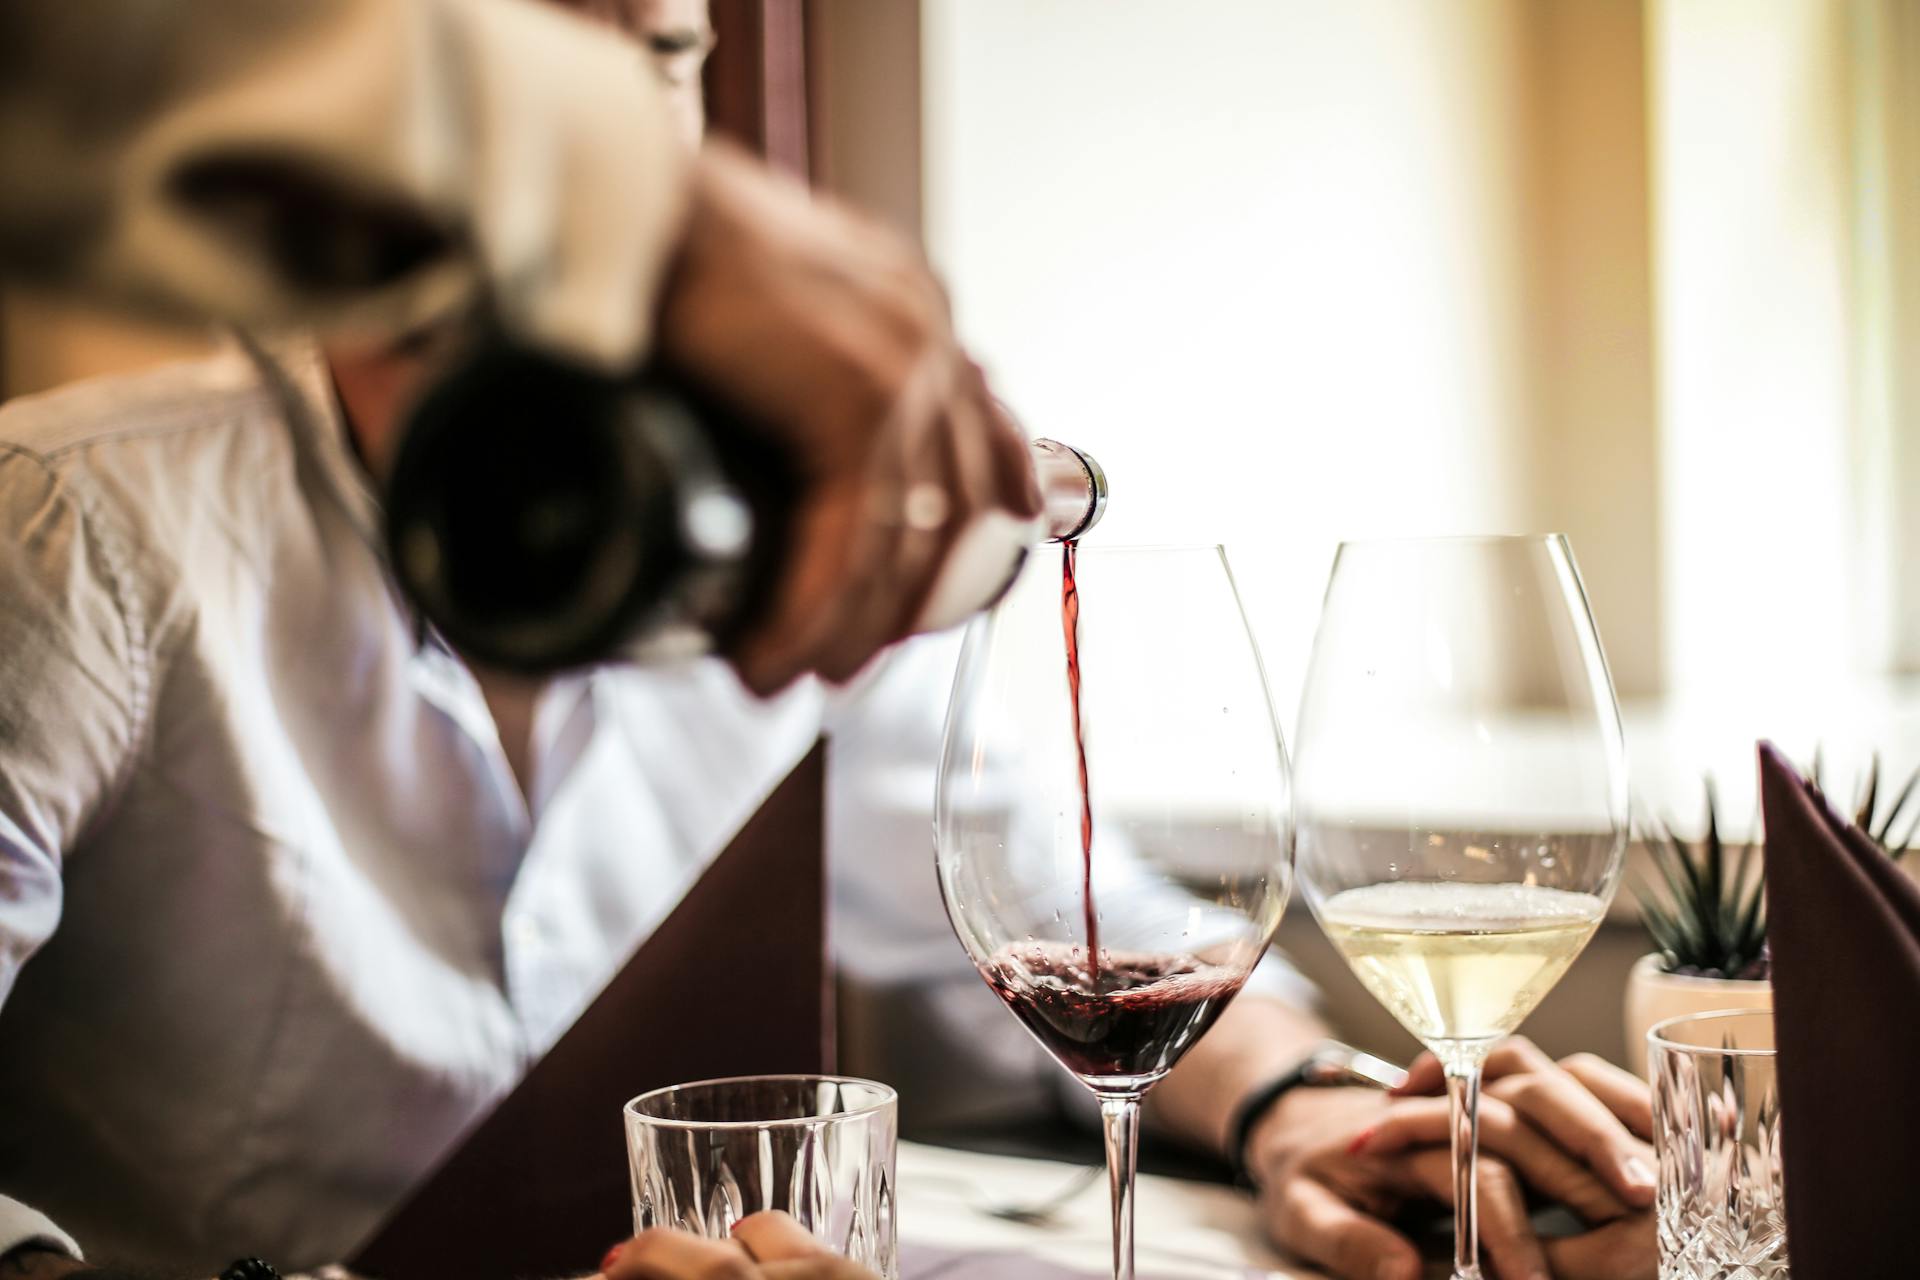 Une personne versant du vin dans un restaurant | Source : Pexels